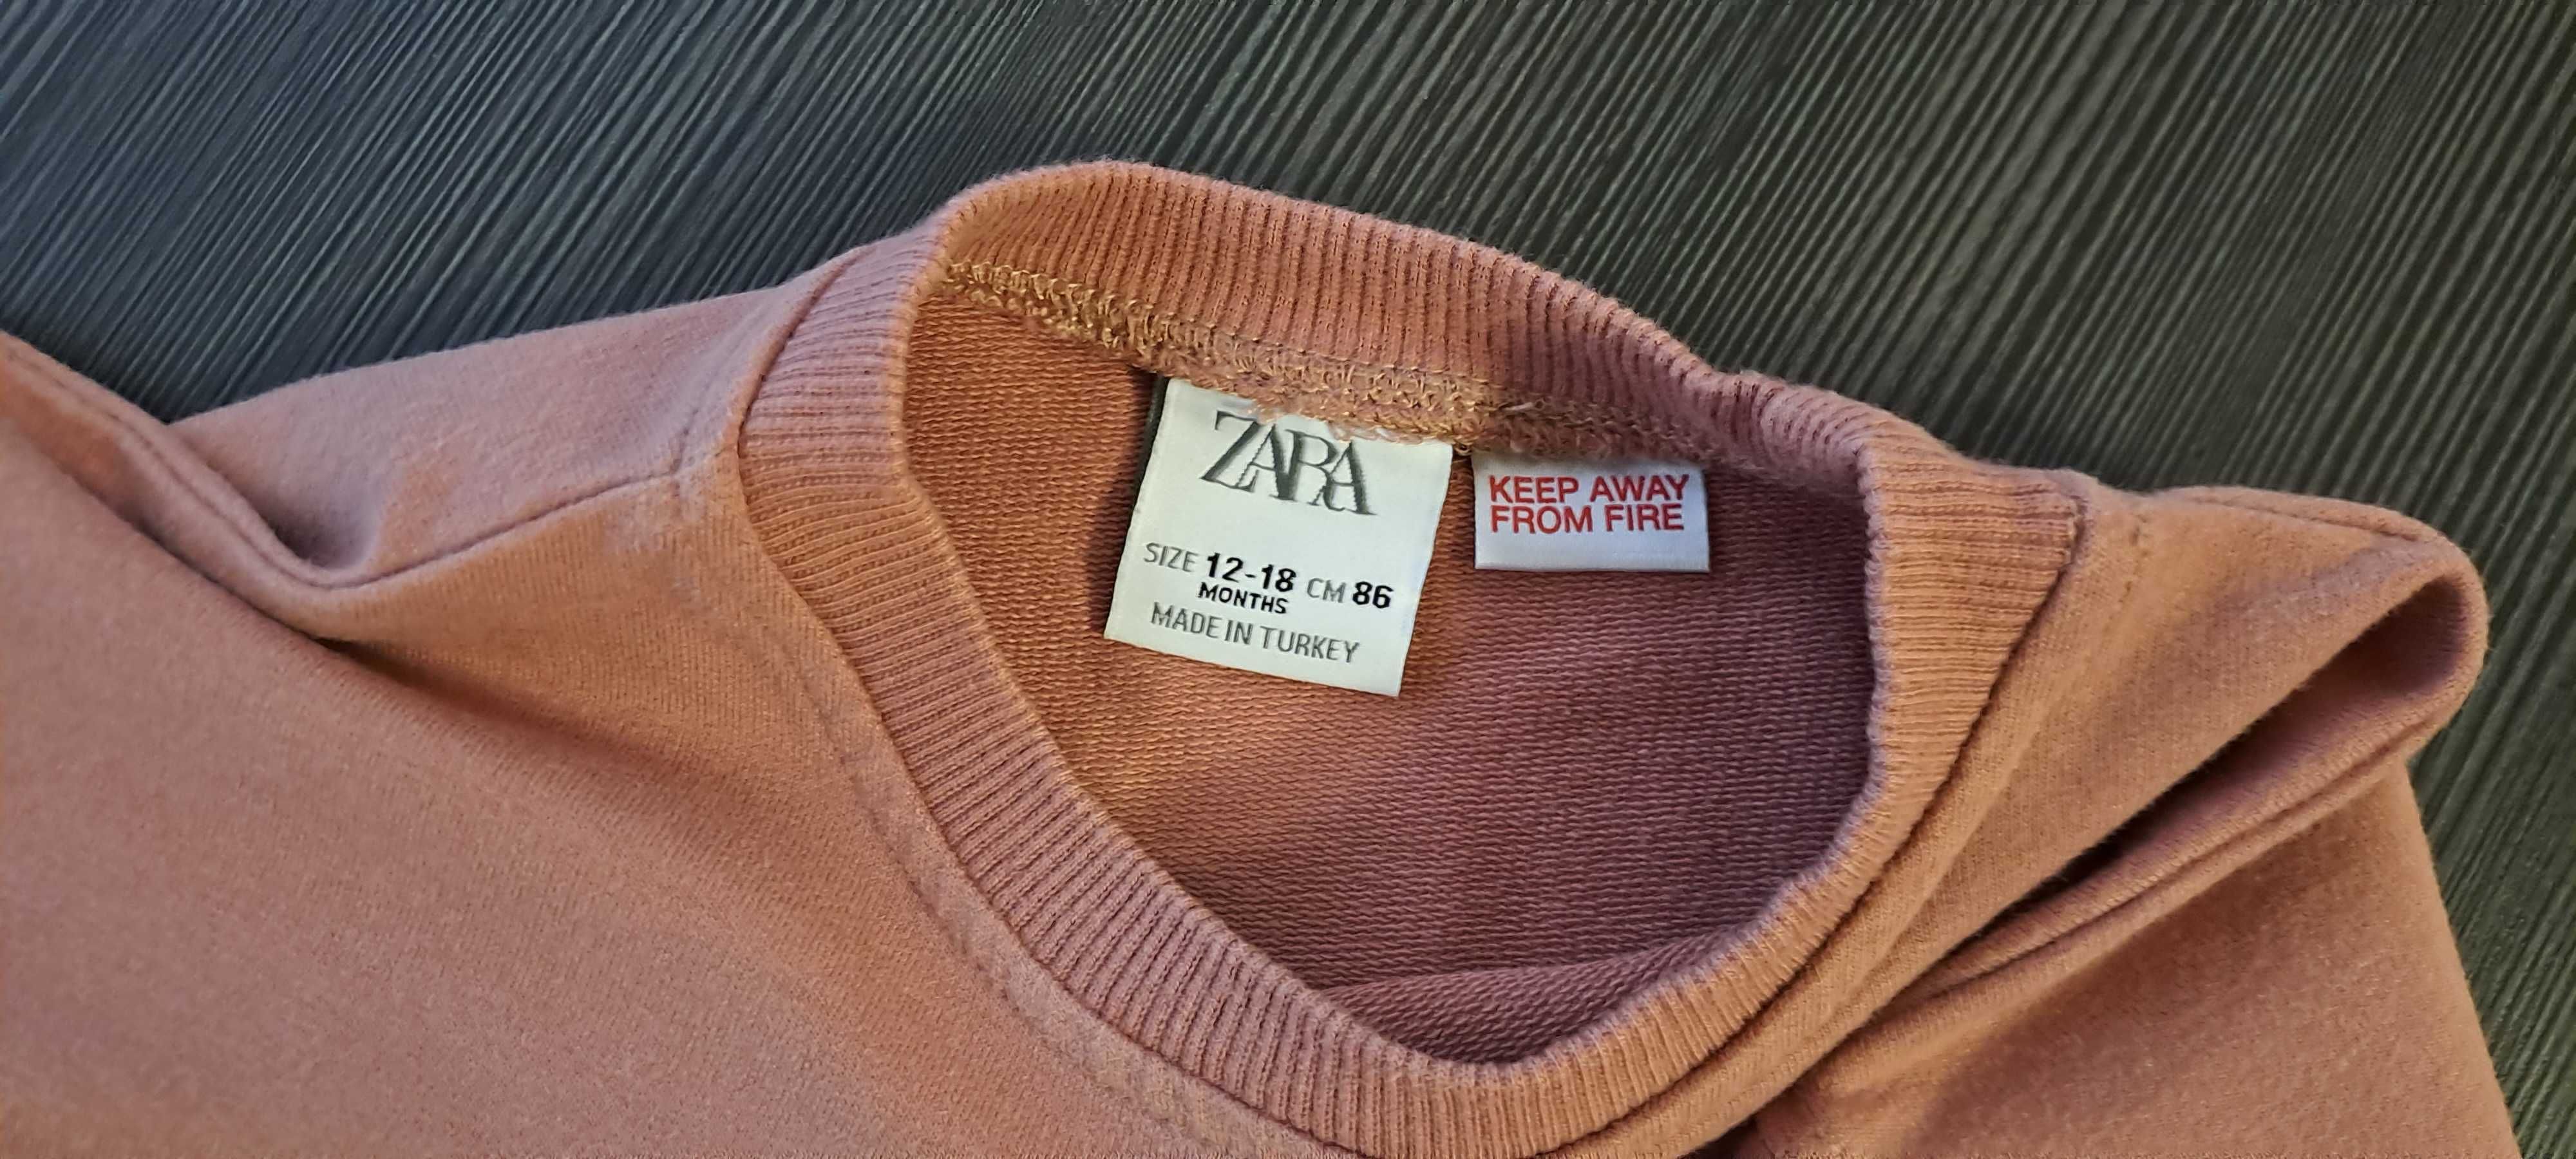 Bluzka marki Zara rozmiar 86